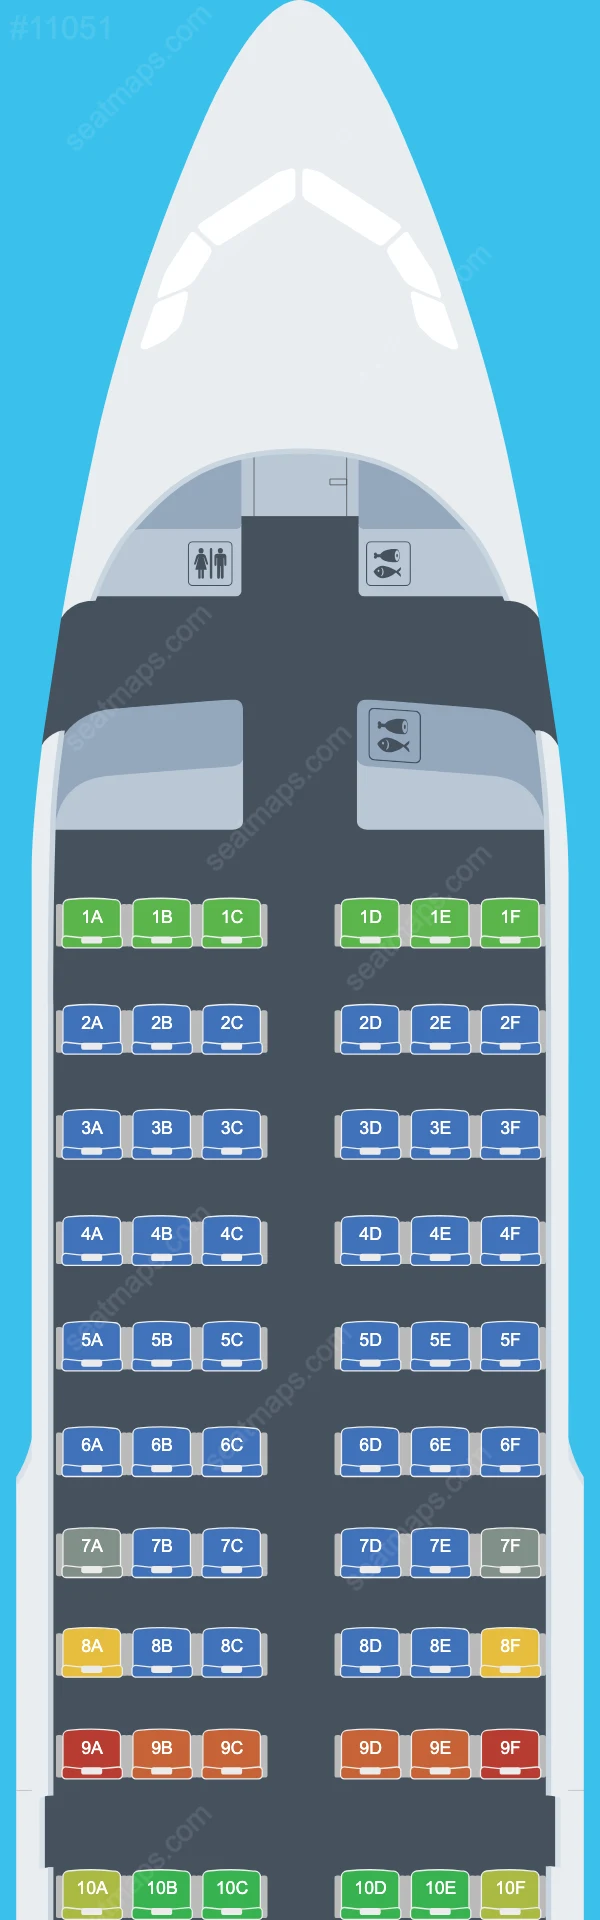 Lufthansa Airbus A319 Seat Maps A319-100 V.2